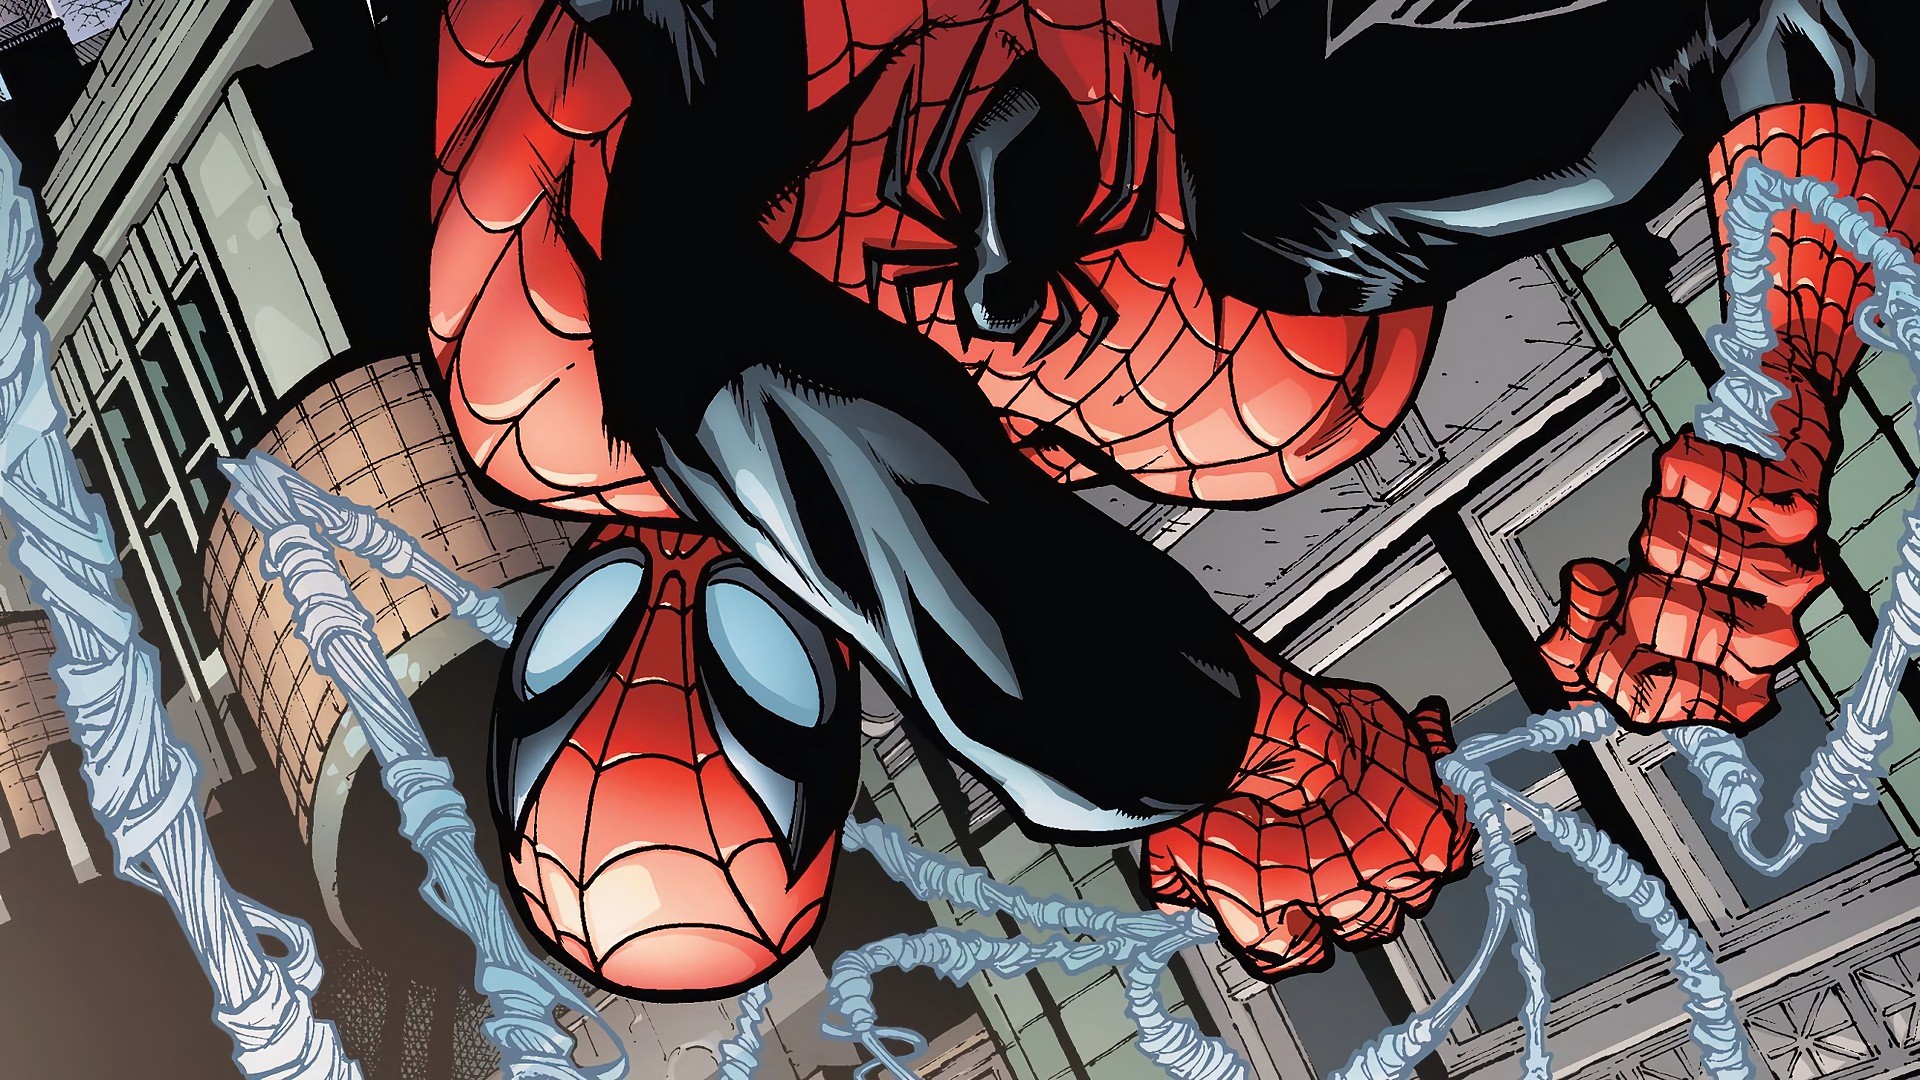 General 1920x1080 Marvel Comics Superior Spider-Man superhero comic art